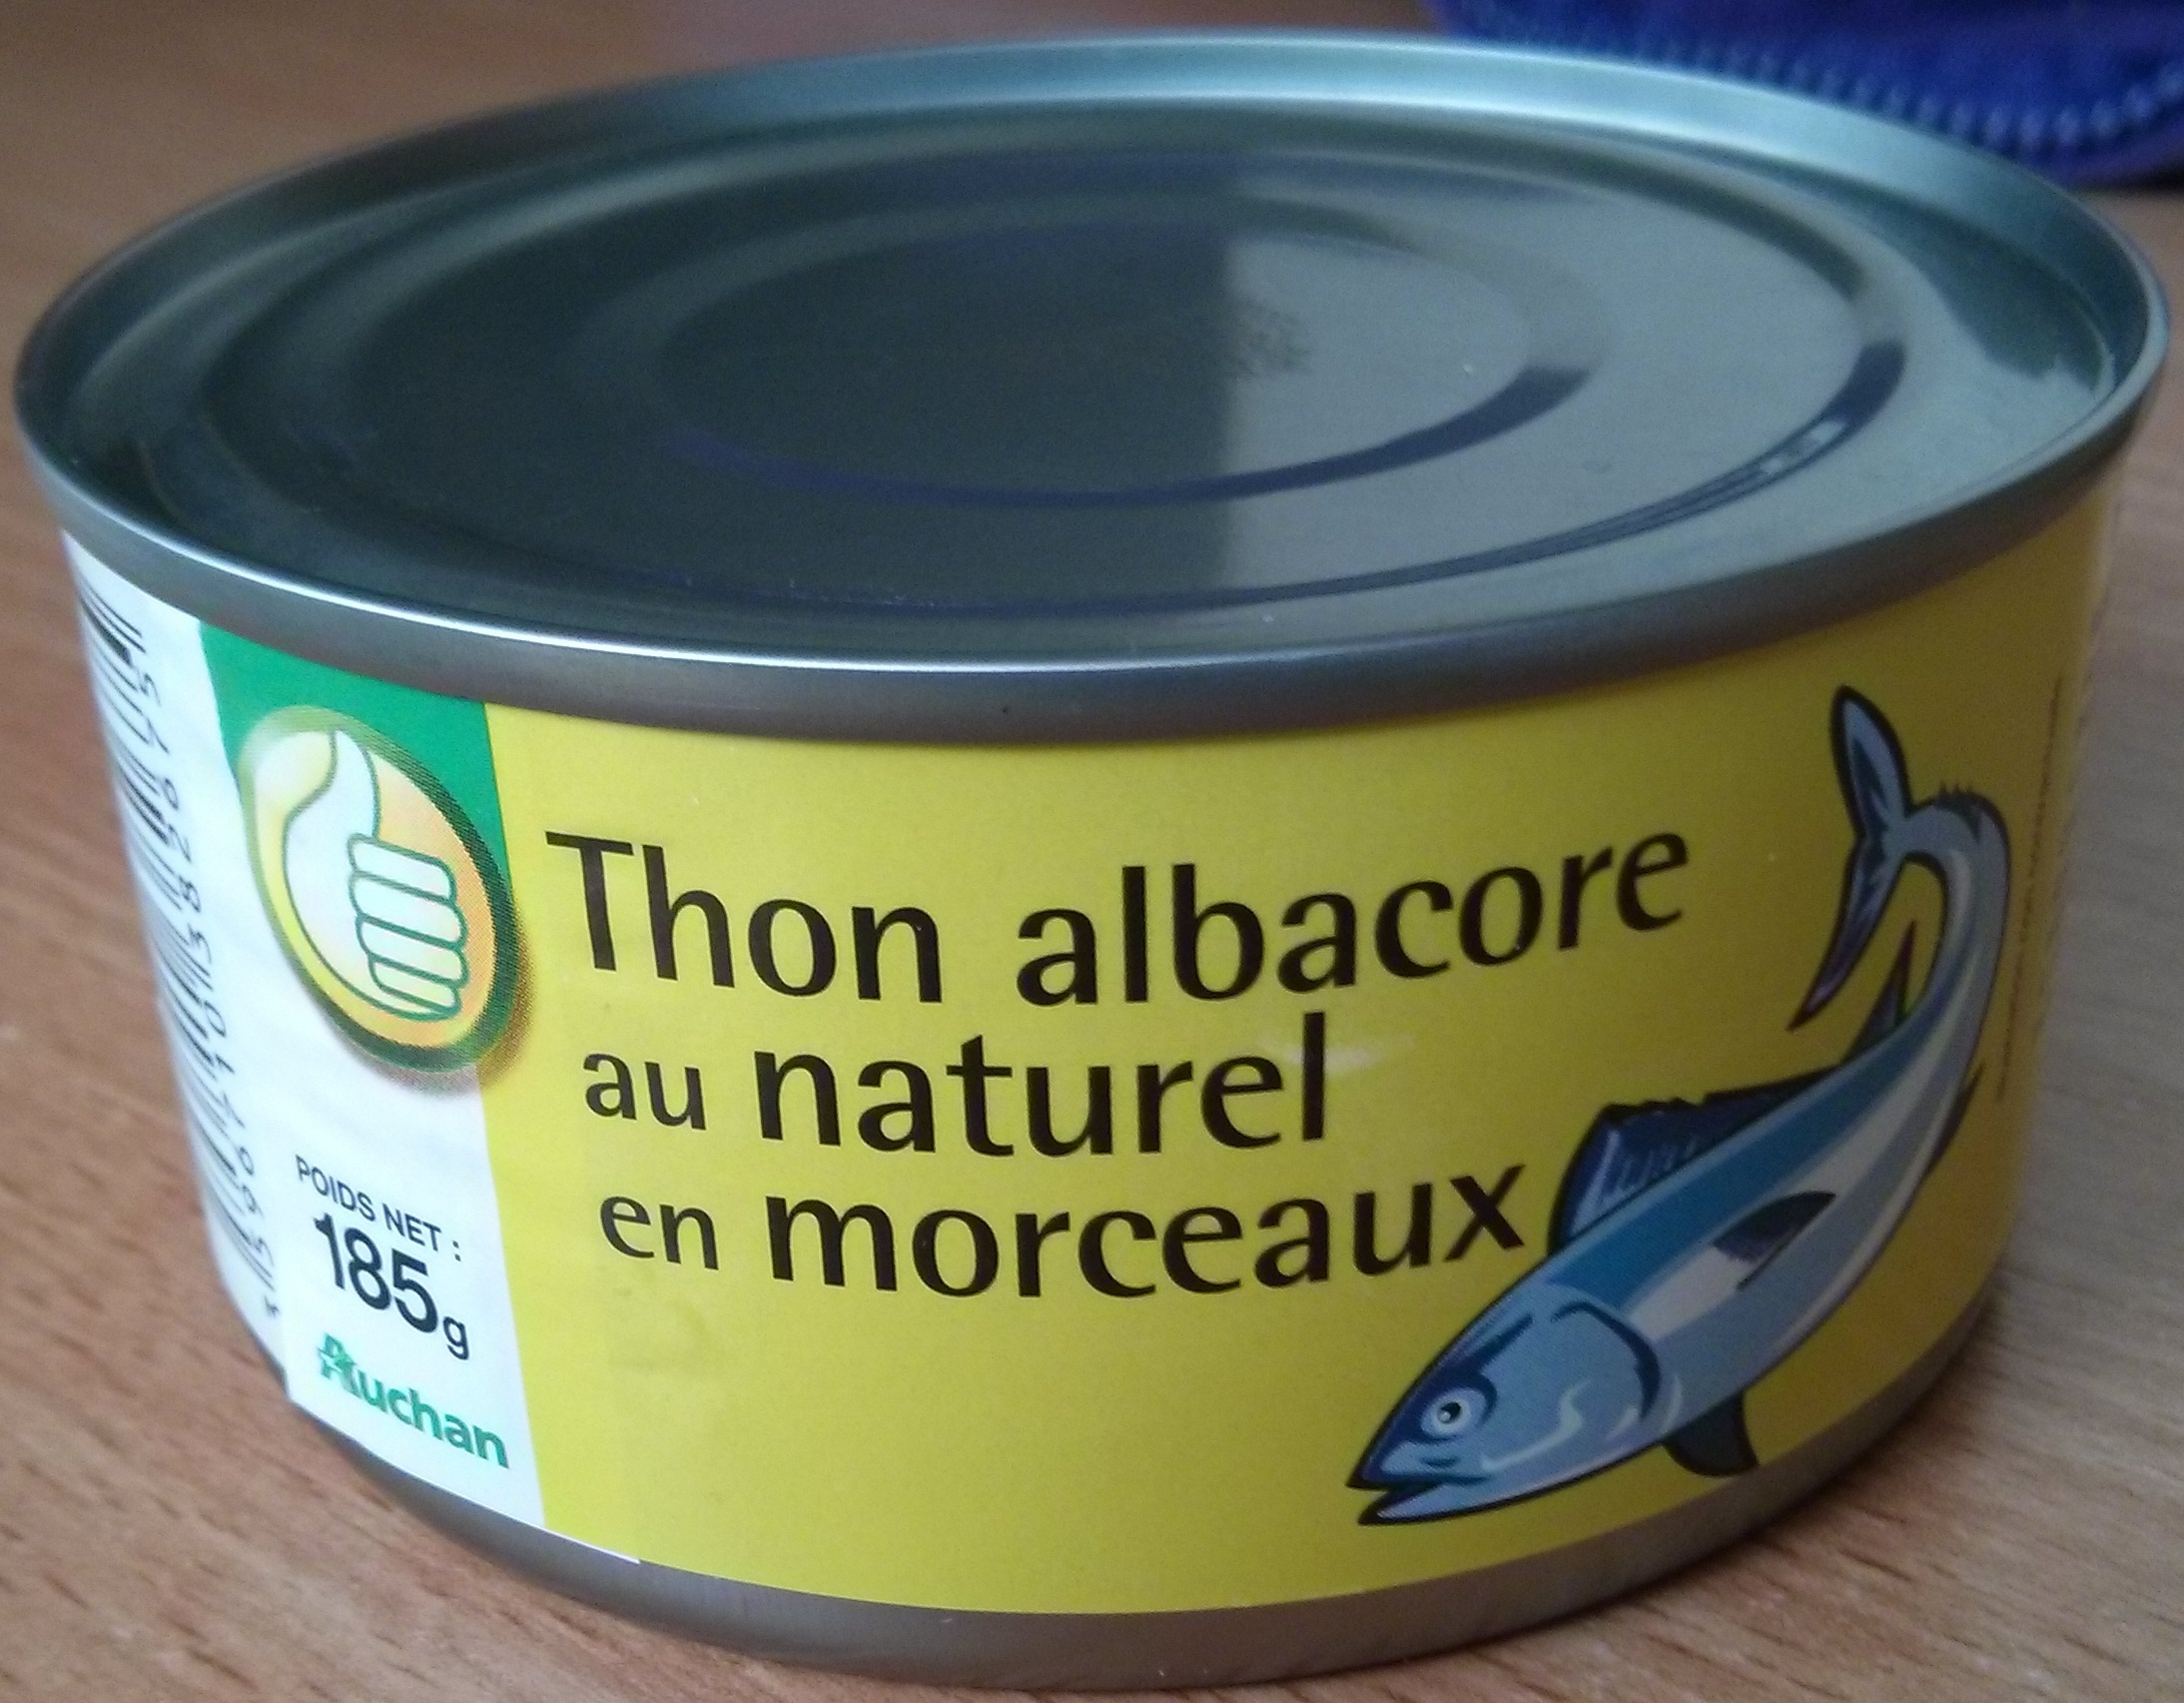 Thon albacore au naturel en morceaux - Pouce (Auchan) - Produkt - fr